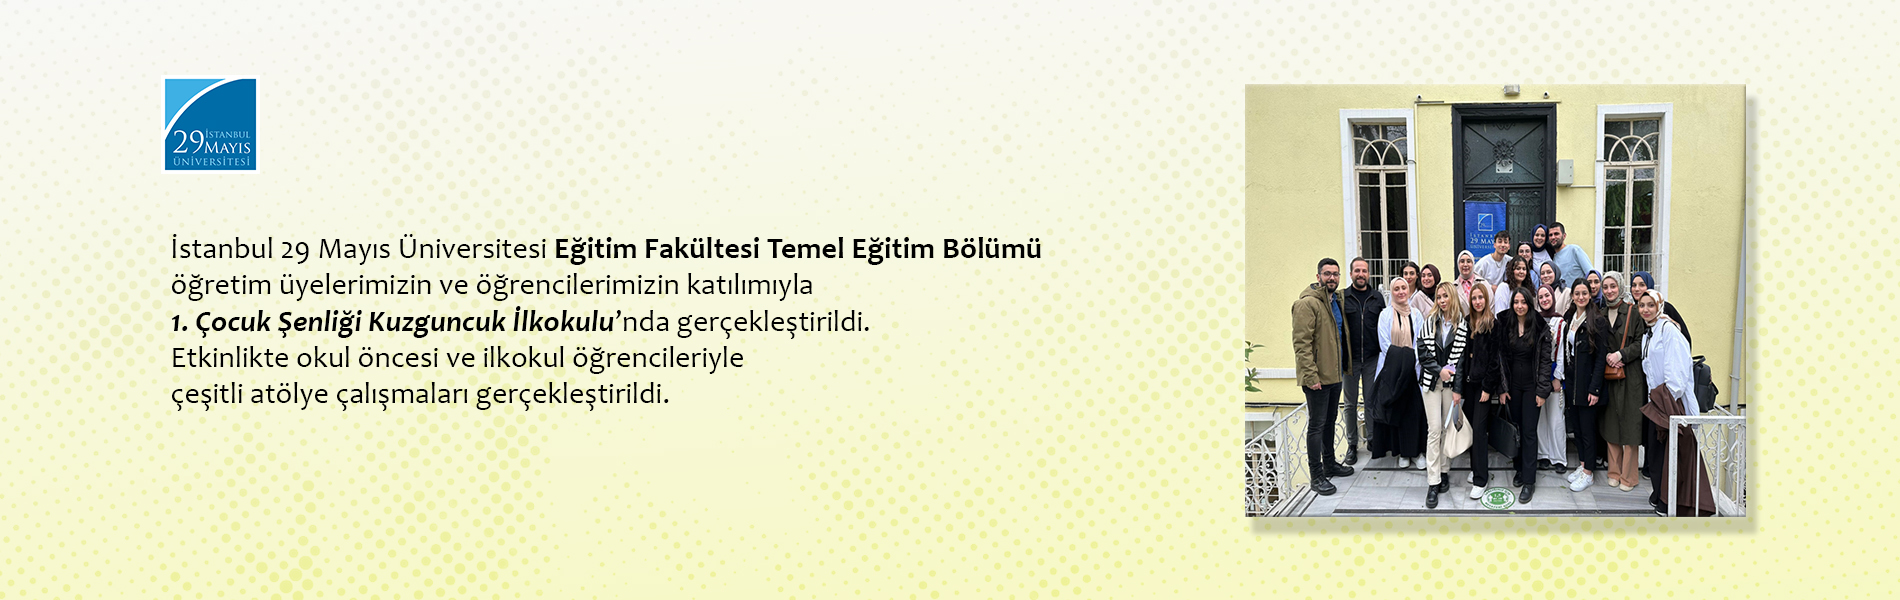 İstanbul 29 Mayıs Üniversitesi Temel Eğitim Bölümü 1. Çocuk Şenliği